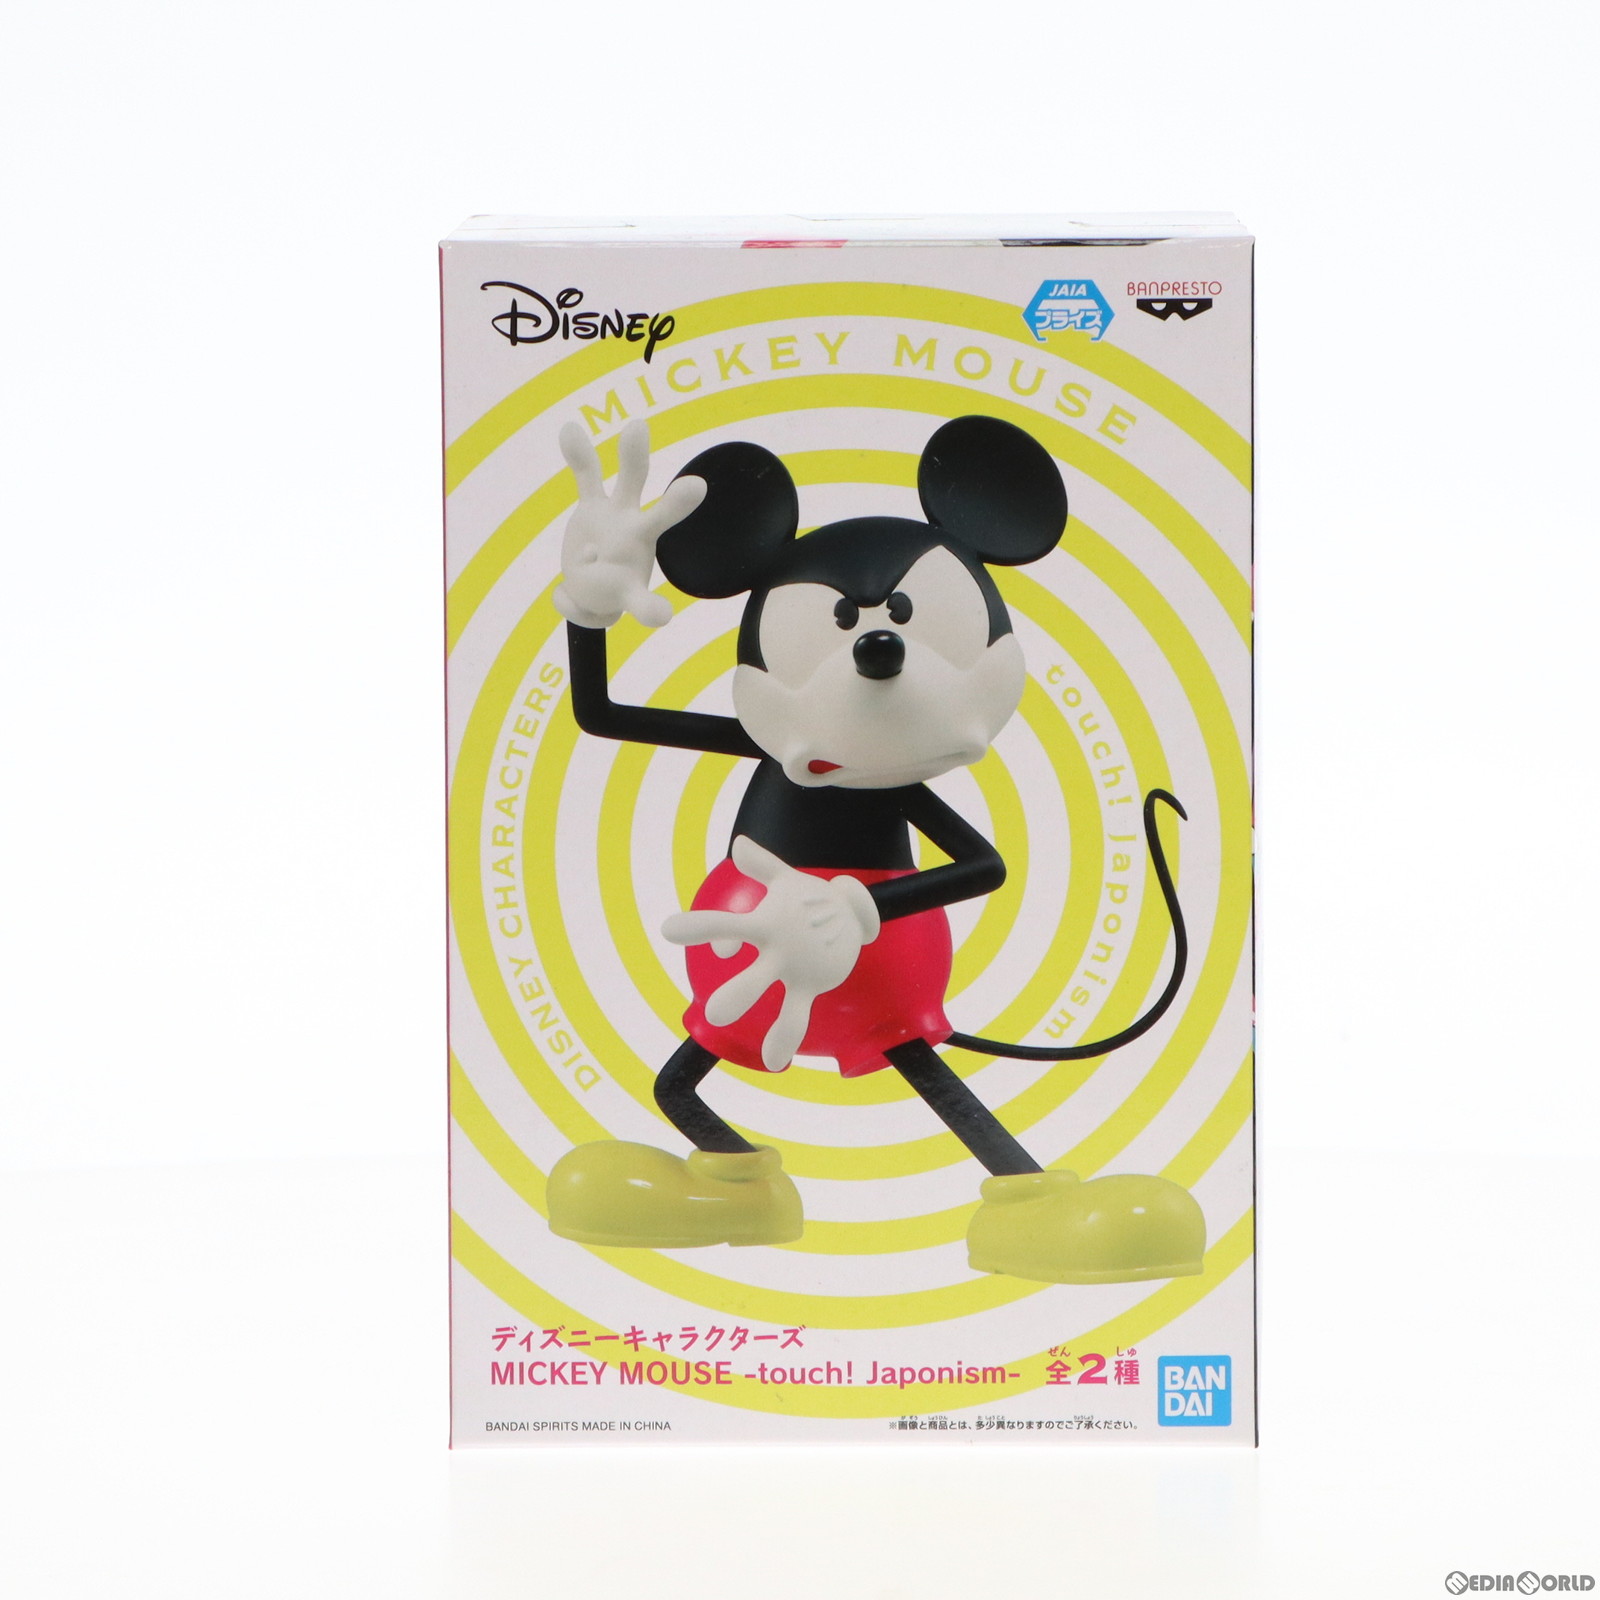 【中古即納】[FIG]ミッキーマウス(台座図形) ディズニーキャラクターズ MICKEY MOUSE -touch! Japonism- フィギュア プライズ(82193) バ